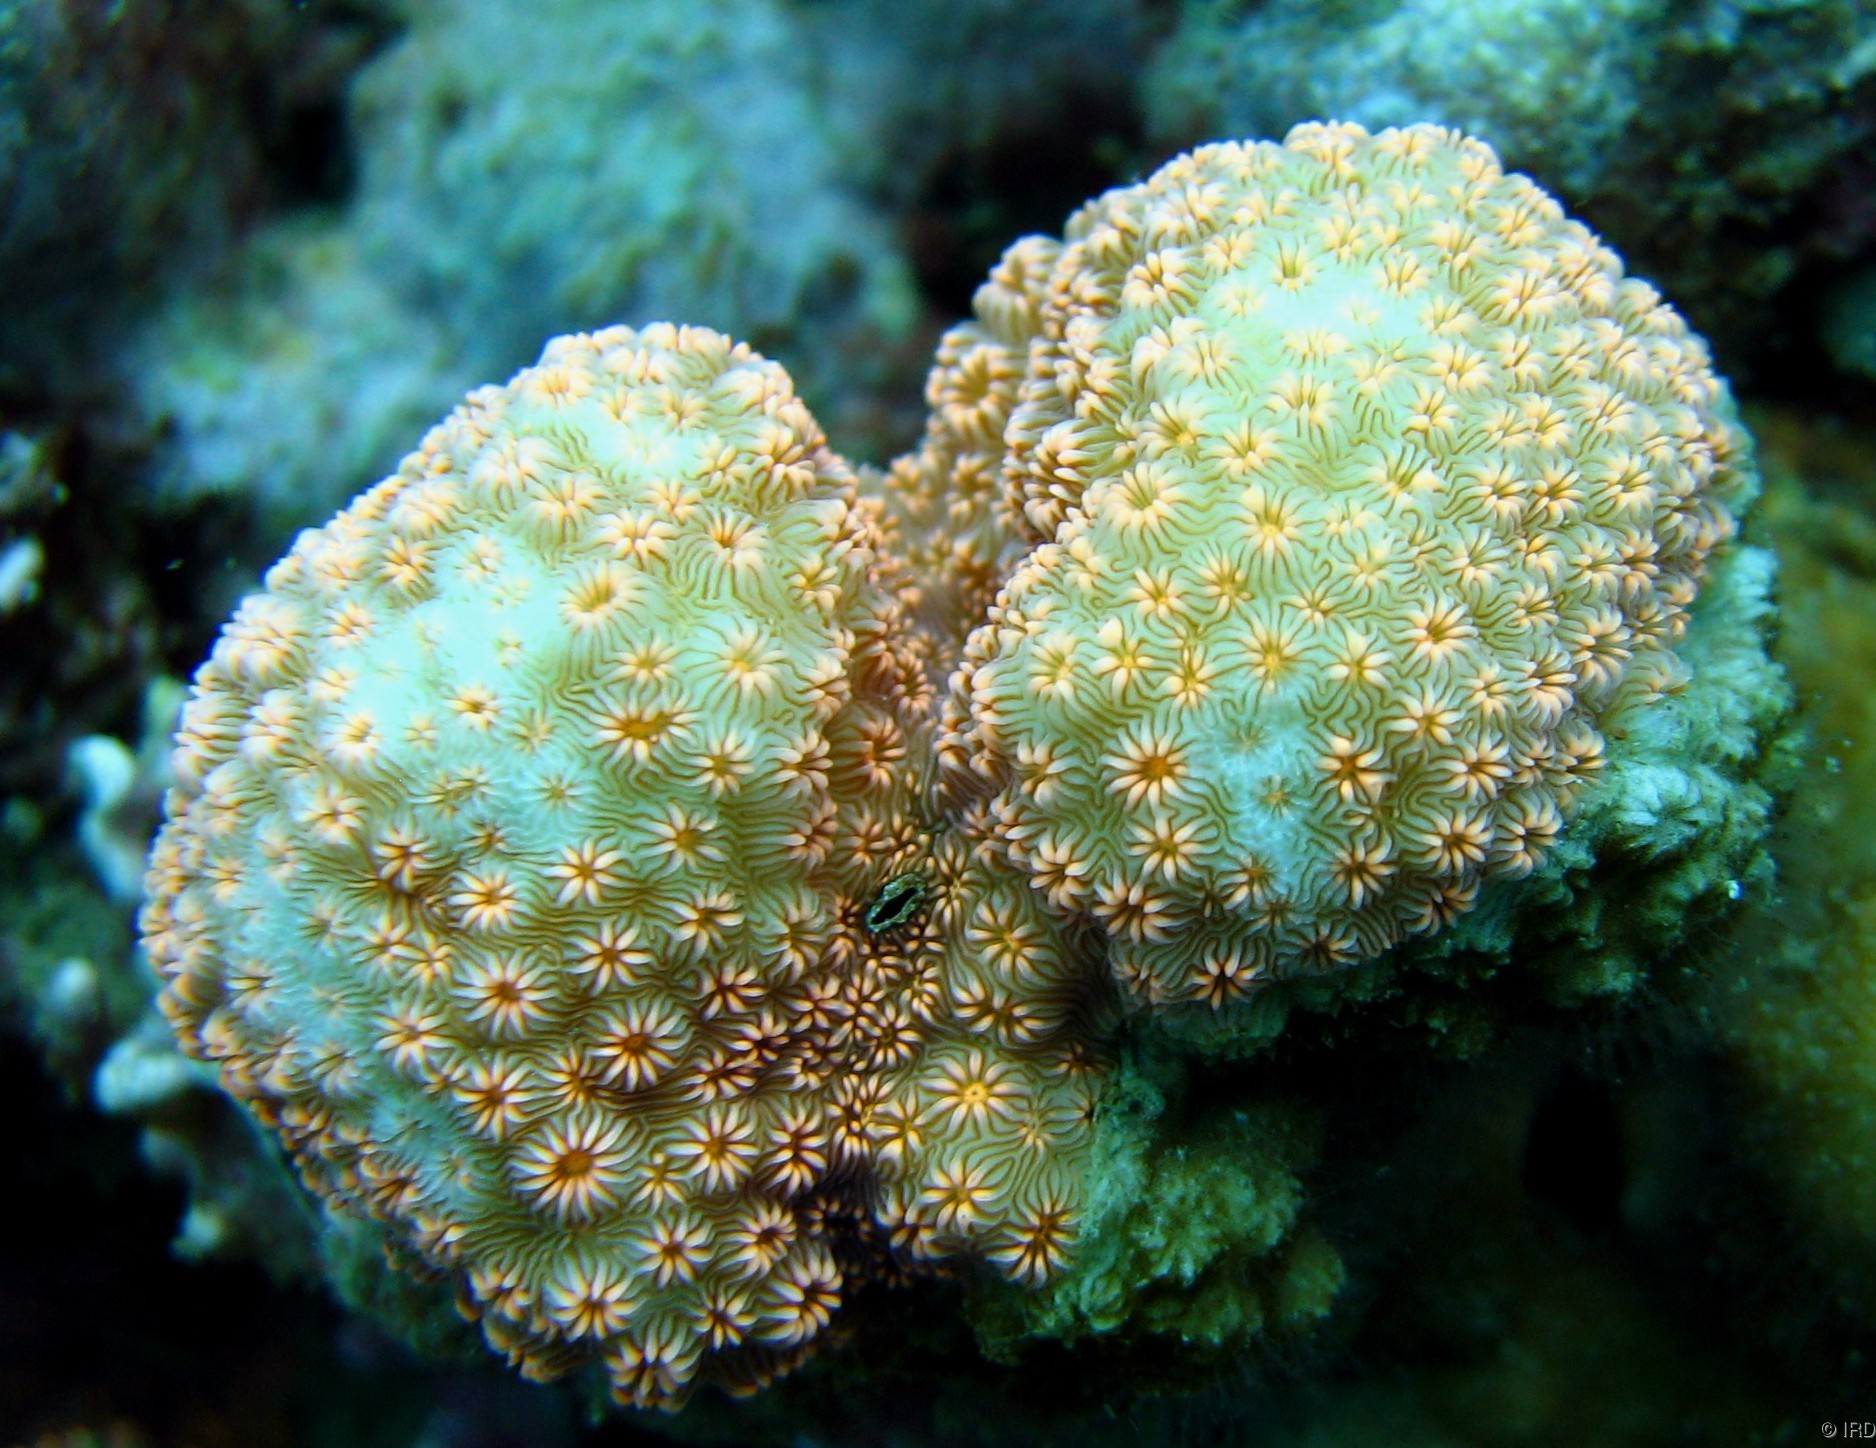 Pavona maldivensis - Close up of a colony in situ - HS0341